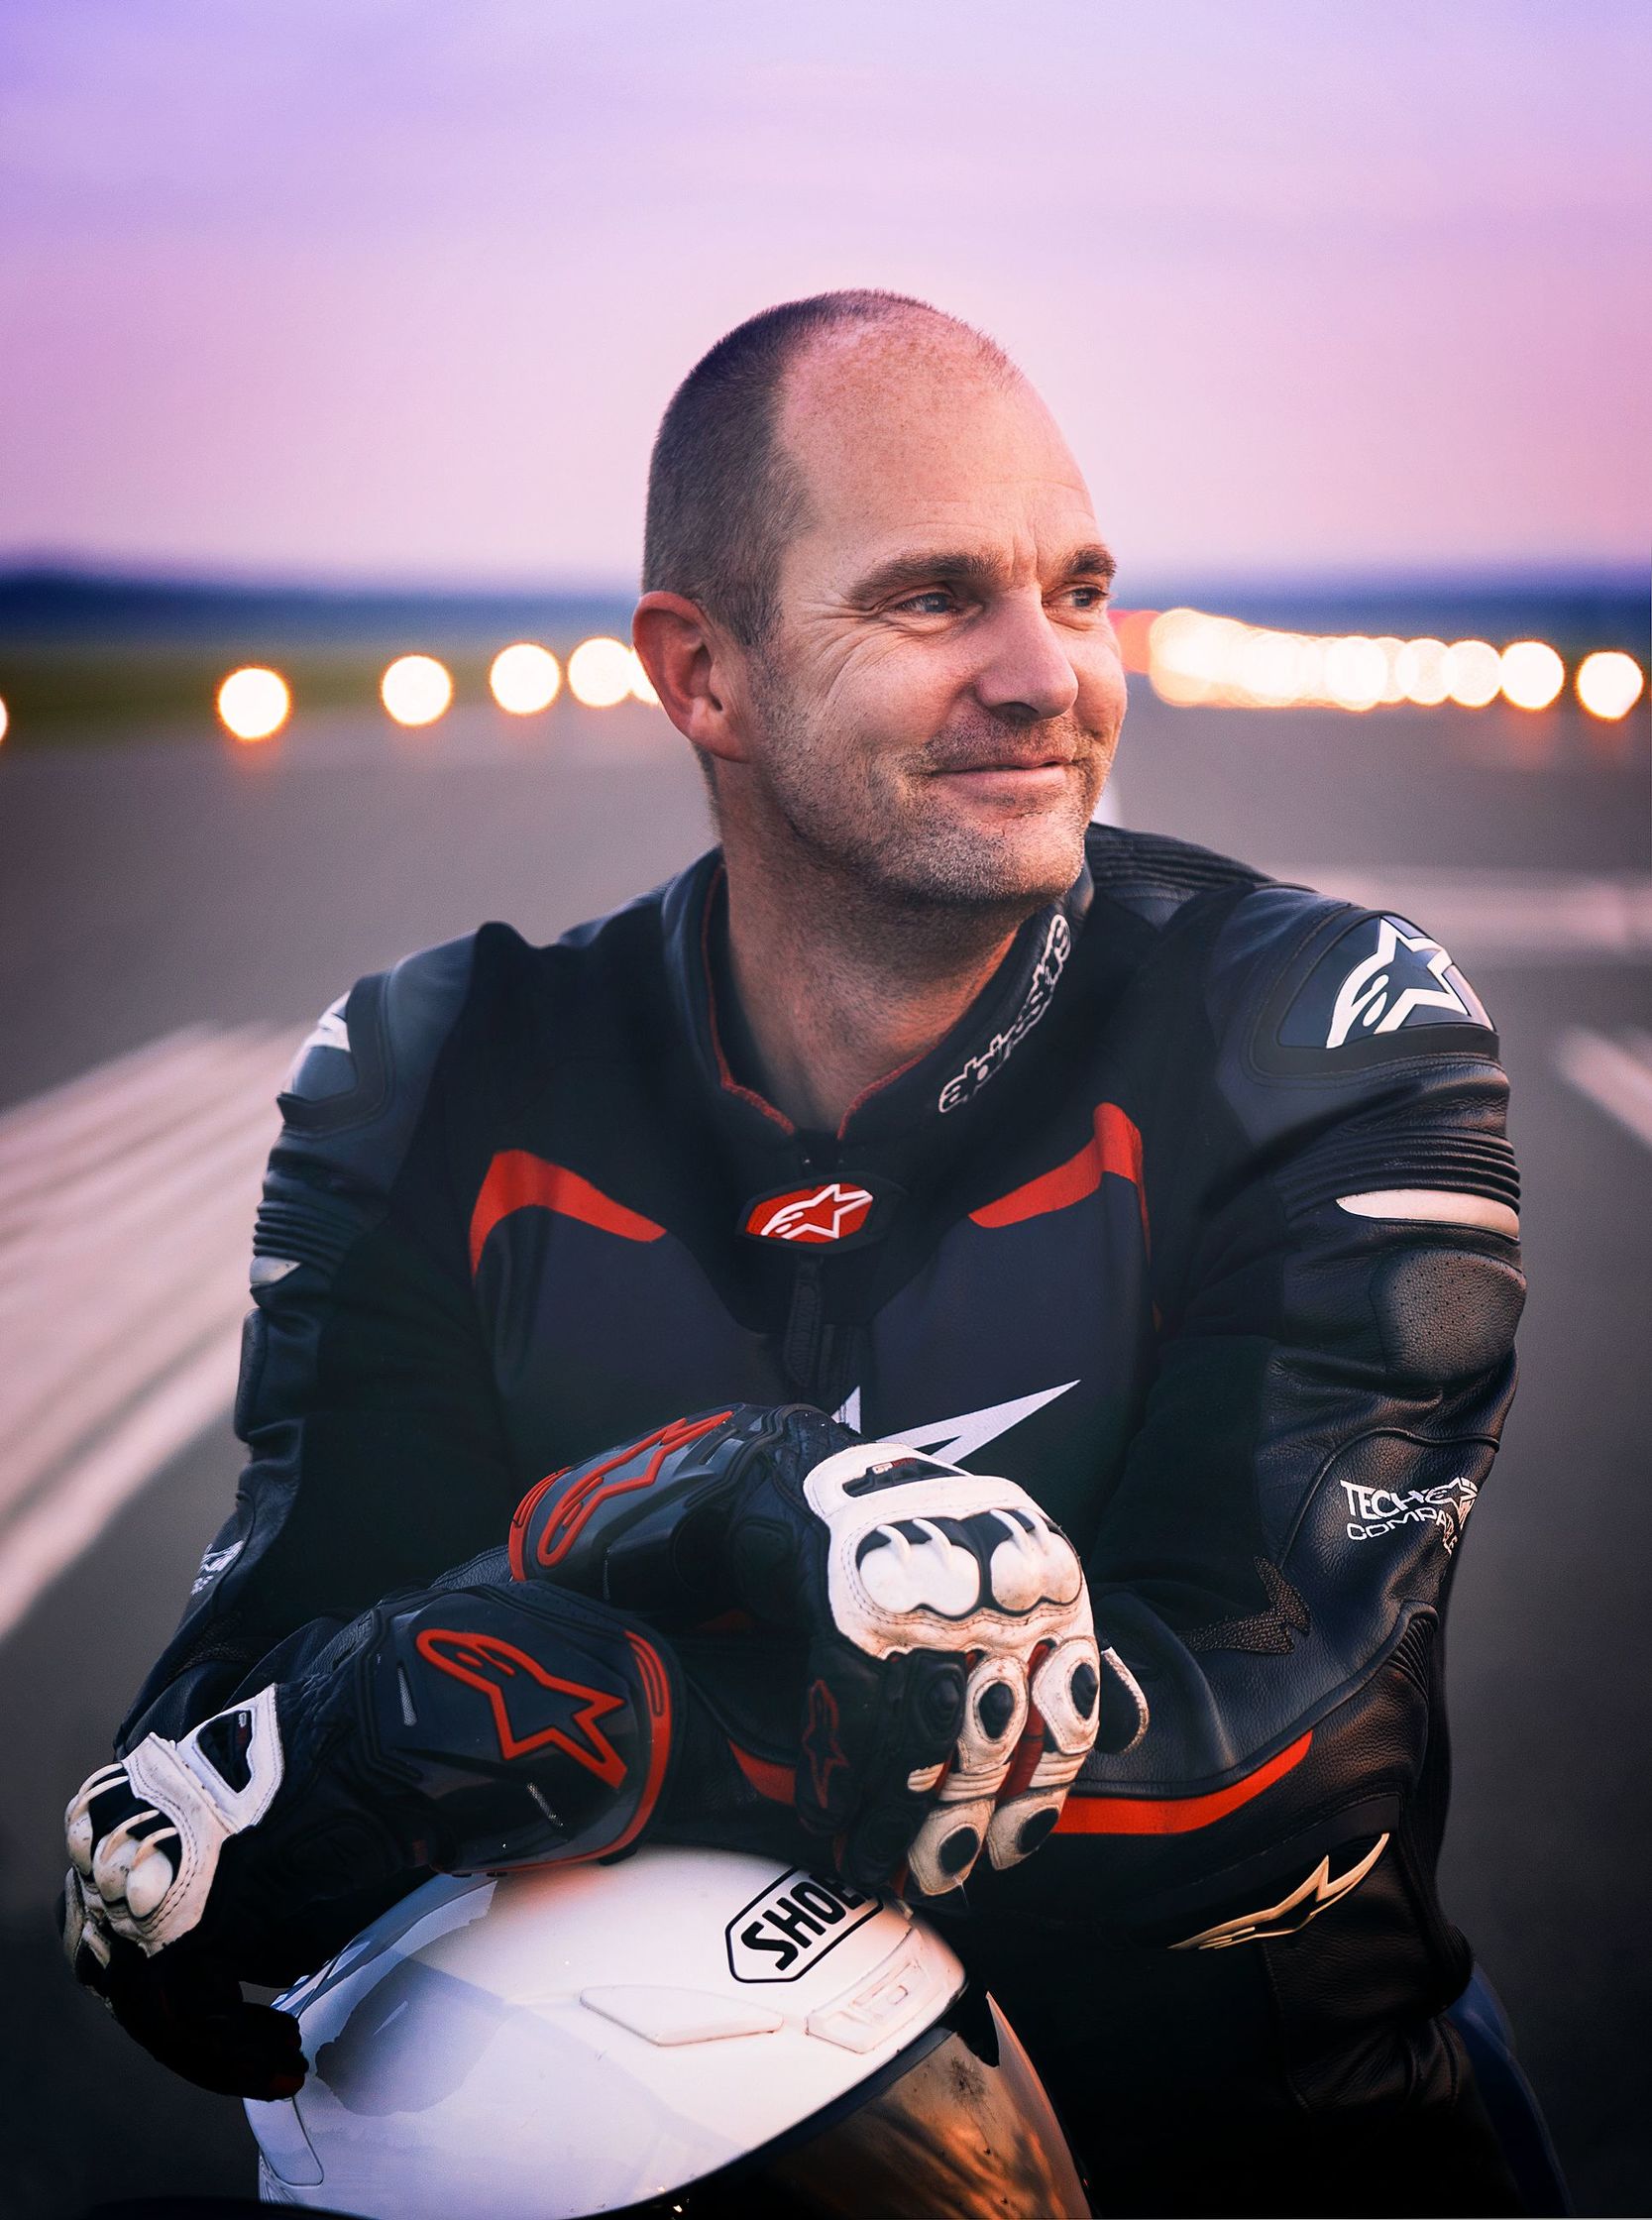 Porträtt på Jonas Möllebro på roadracing-motorcykel.